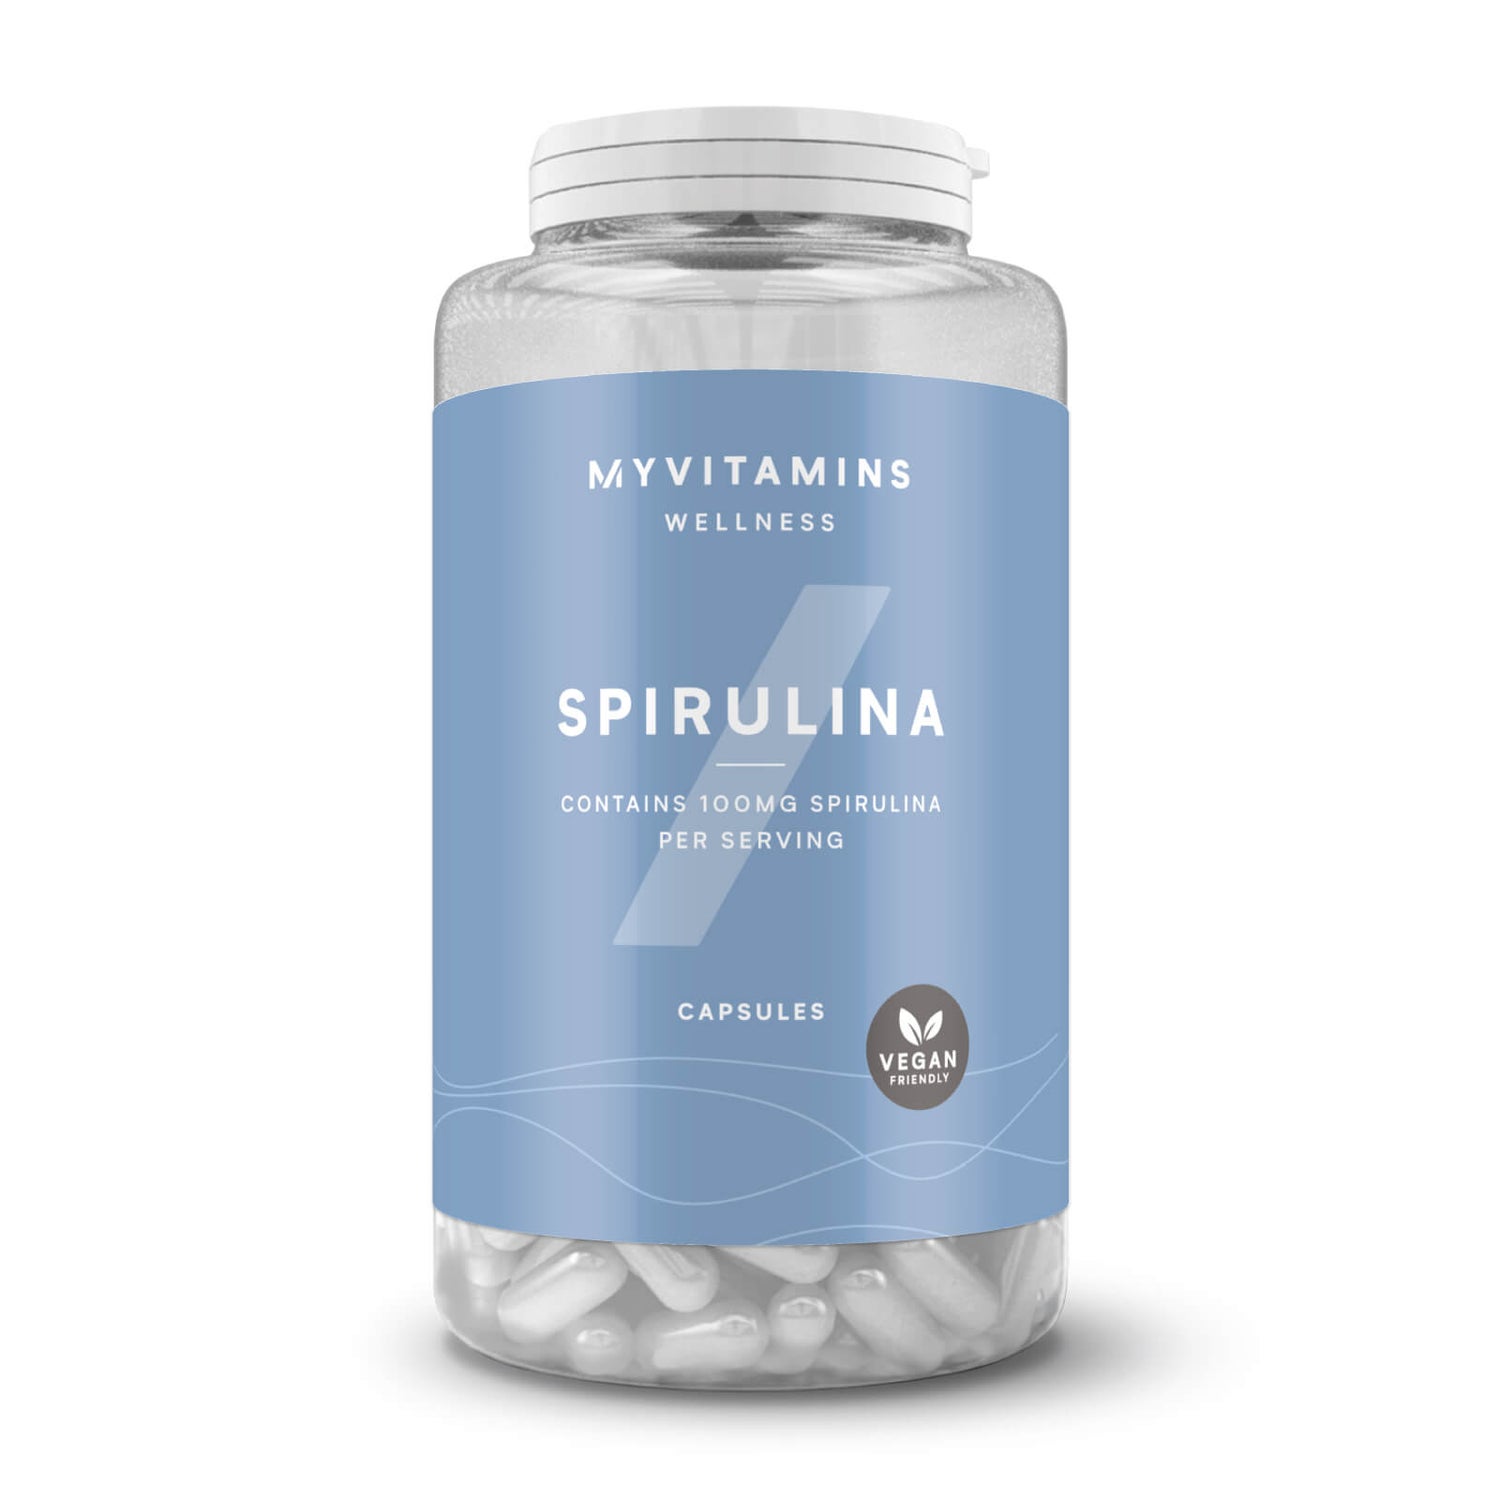 Myvitamins Spirulina - 60Kapseln